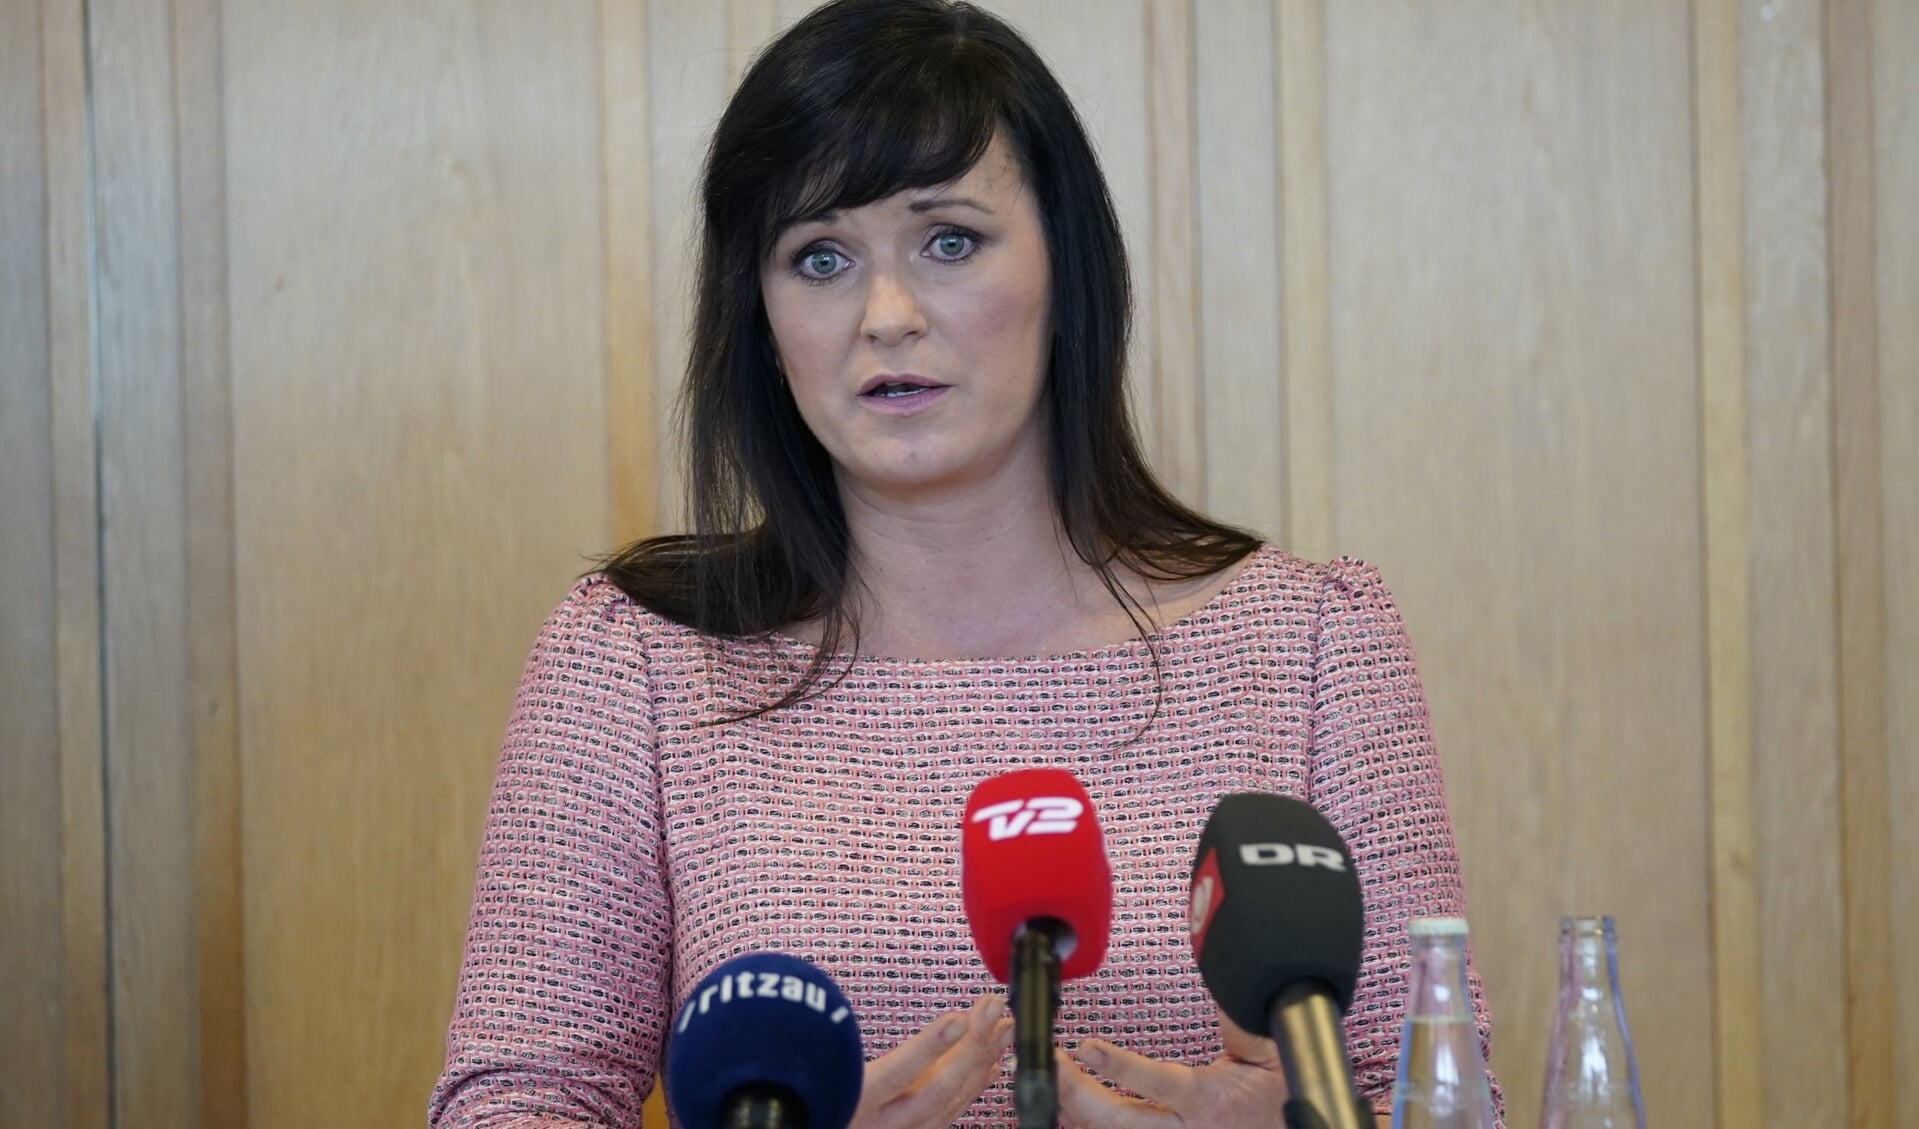 Danmarks indenrigs- og sundhedsminister Sophie Løhde (V) er rystet over historier om for lange ventetider hos kræftpatienter.